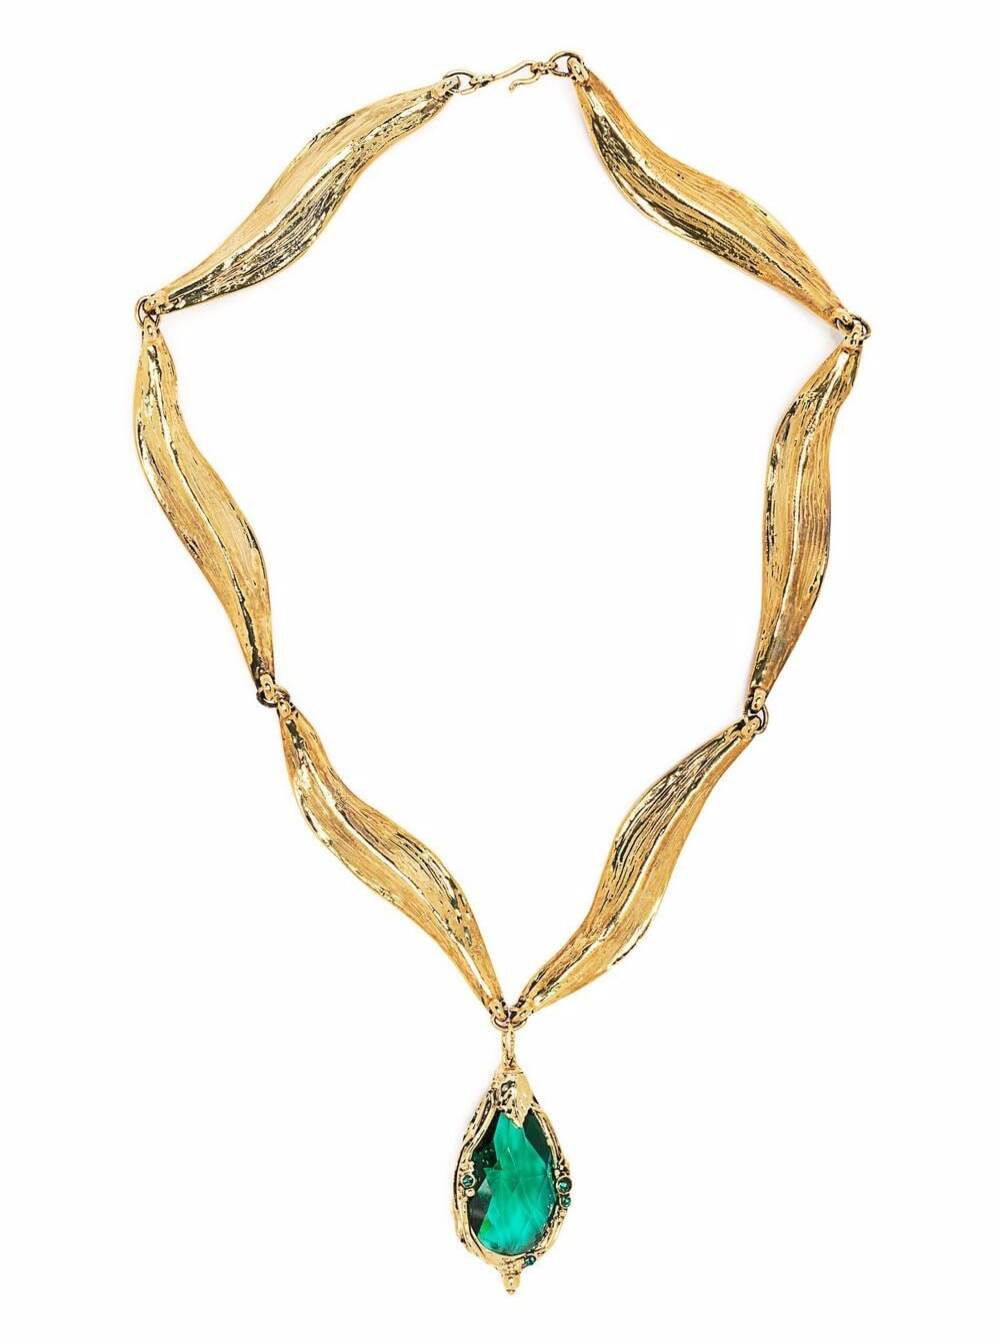 Alberta Ferretti Gold Colored Metal Necklace With Green Stone